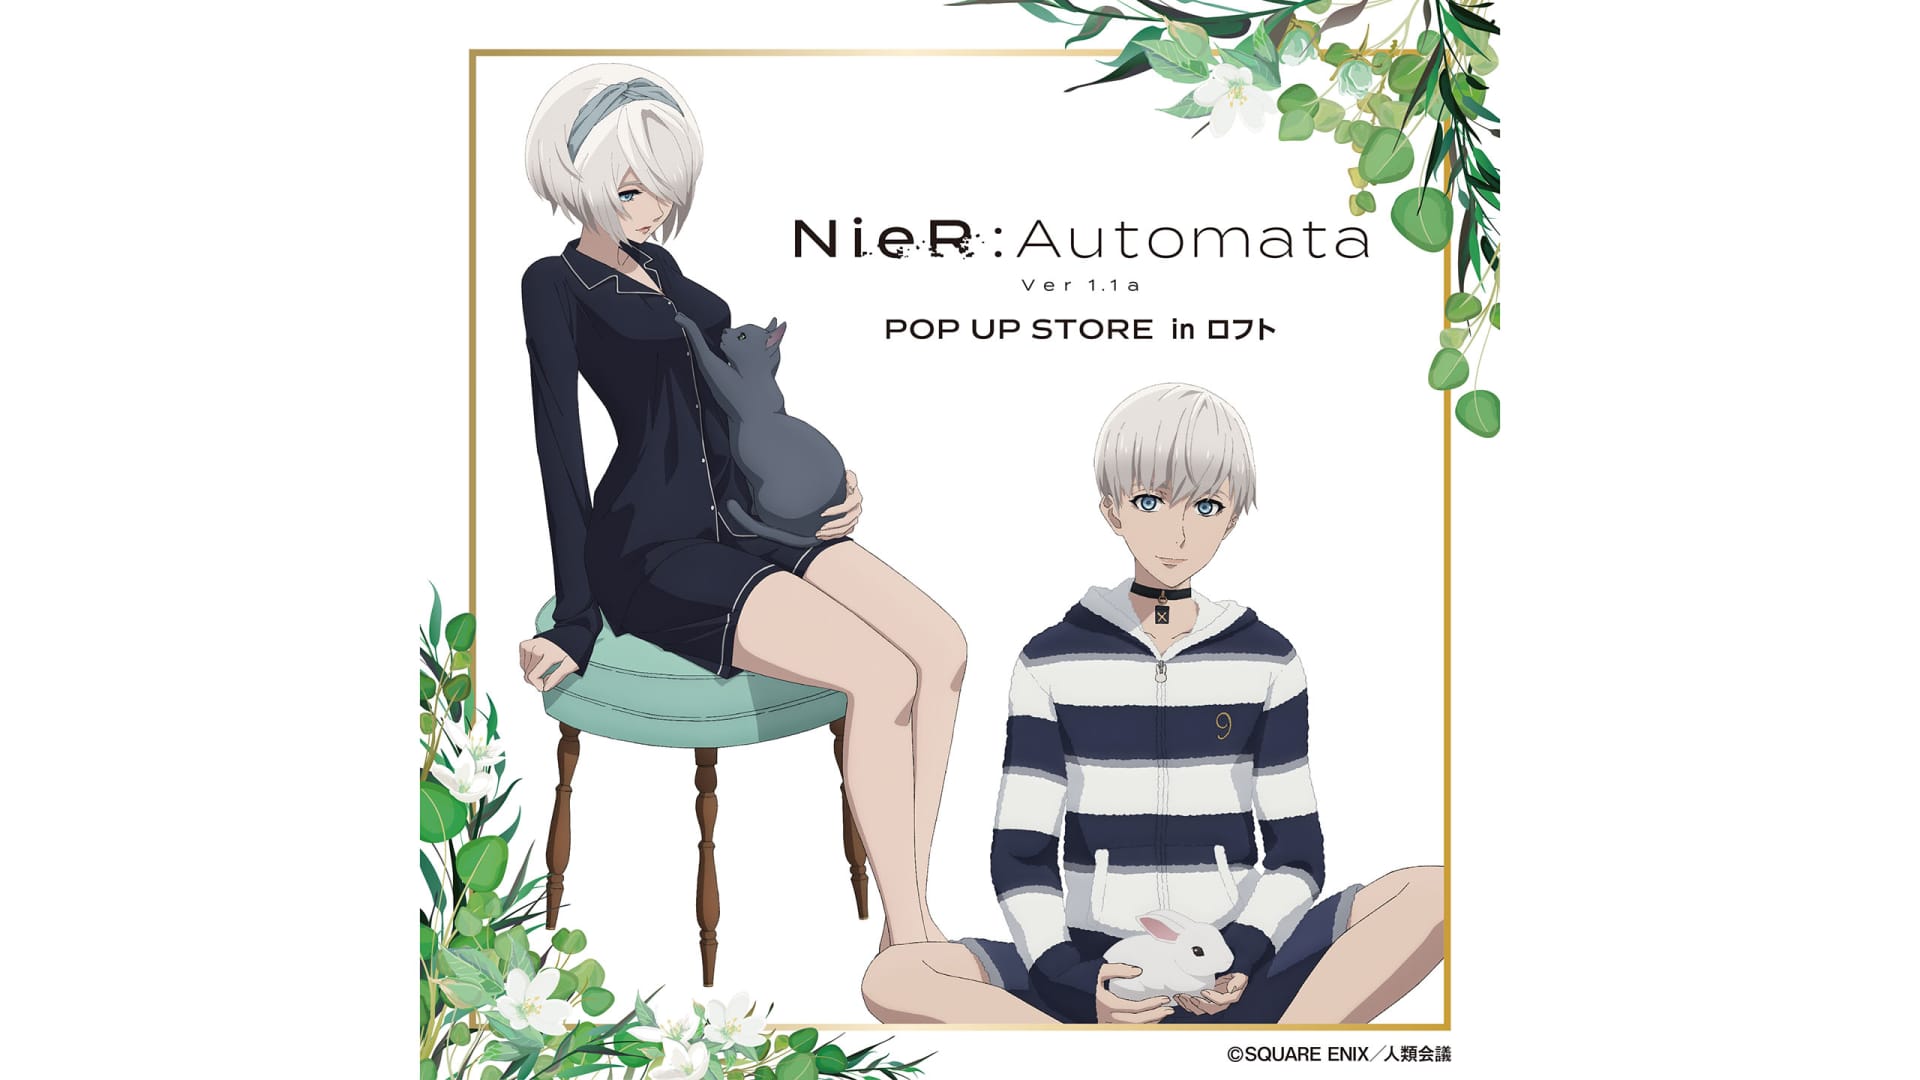 NieR: Automata 「リラックスタイム」[M]e 「日本のポップアップショップには本当に素敵な商品がいくつかあります.